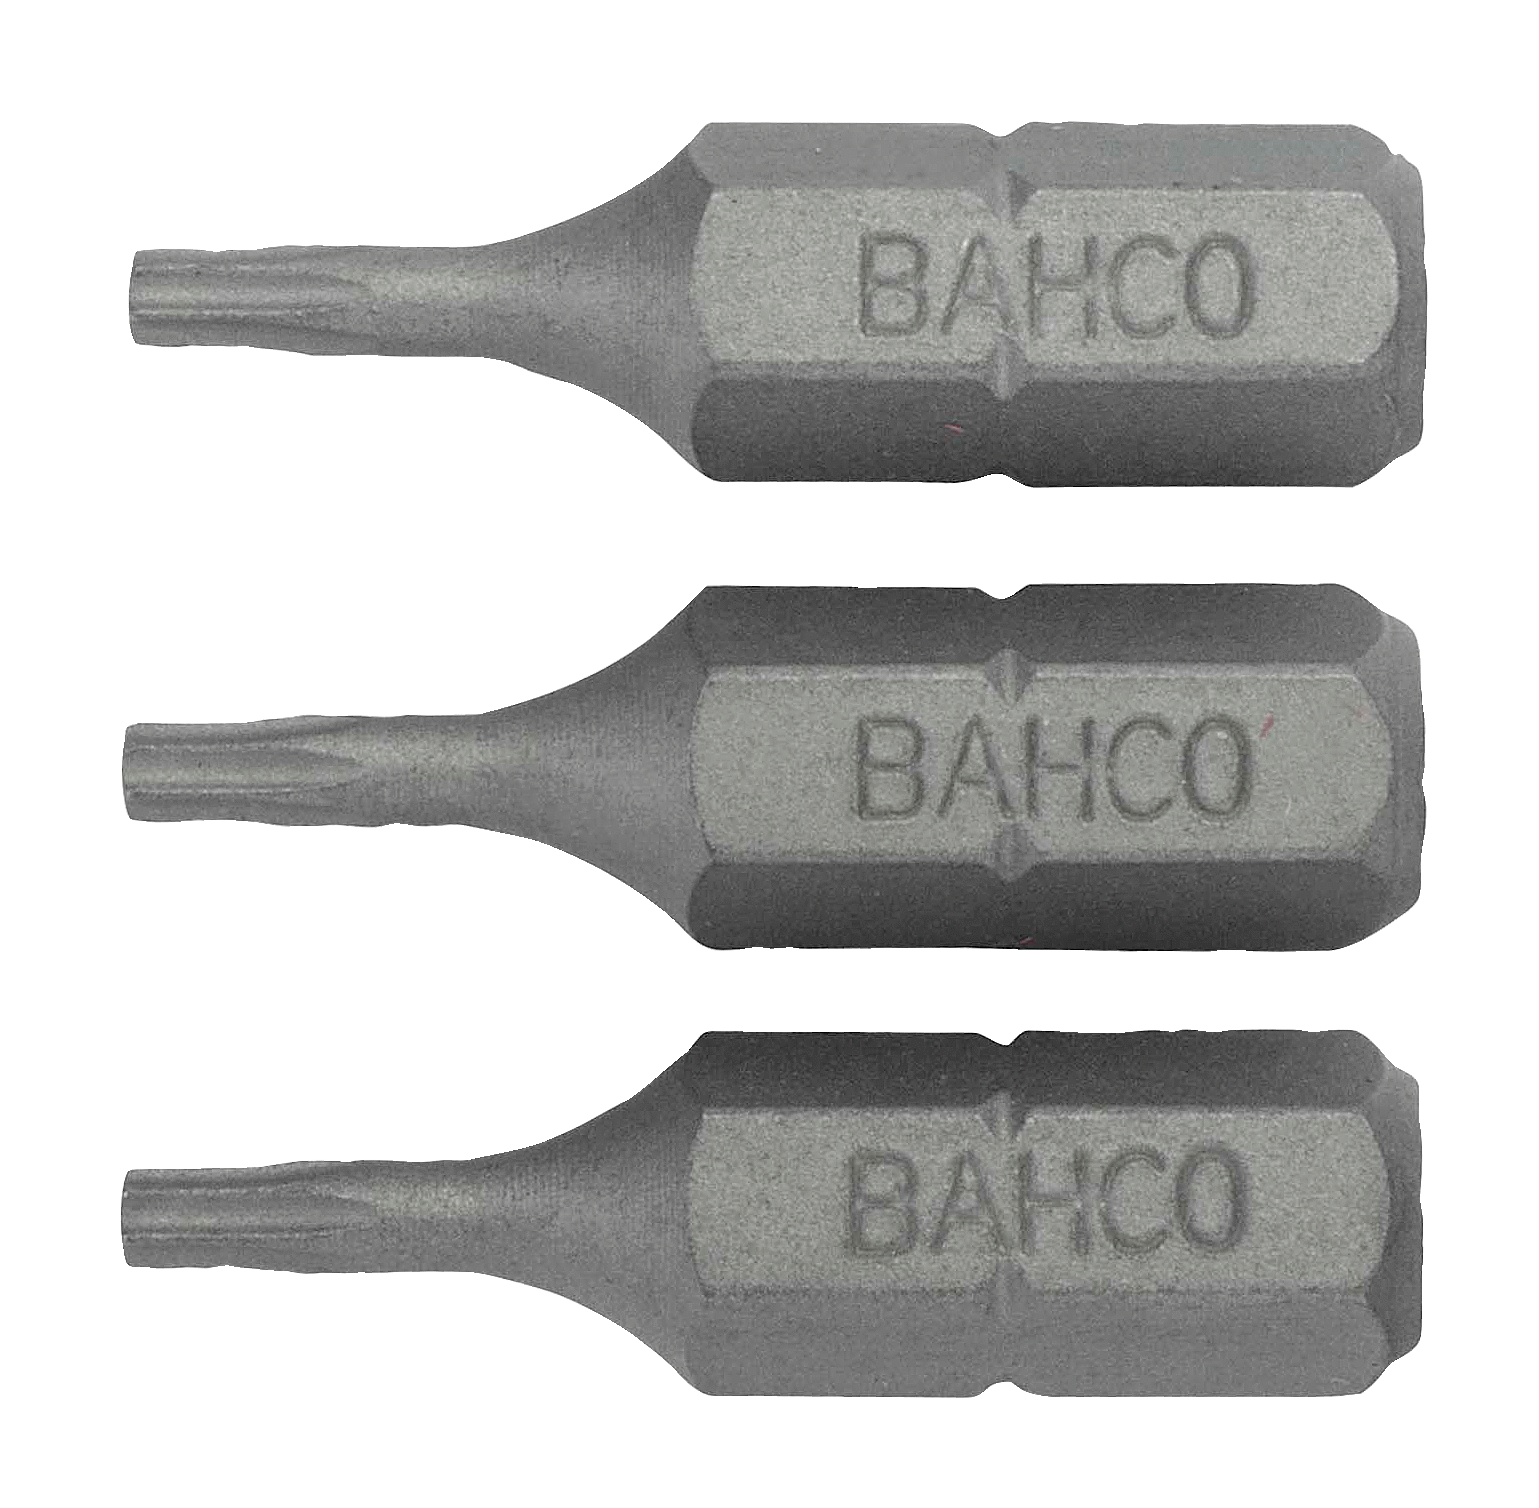 картинка Стандартные биты для отверток Torx® TR, 25 мм BAHCO 59S/TR9 от магазина "Элит-инструмент"